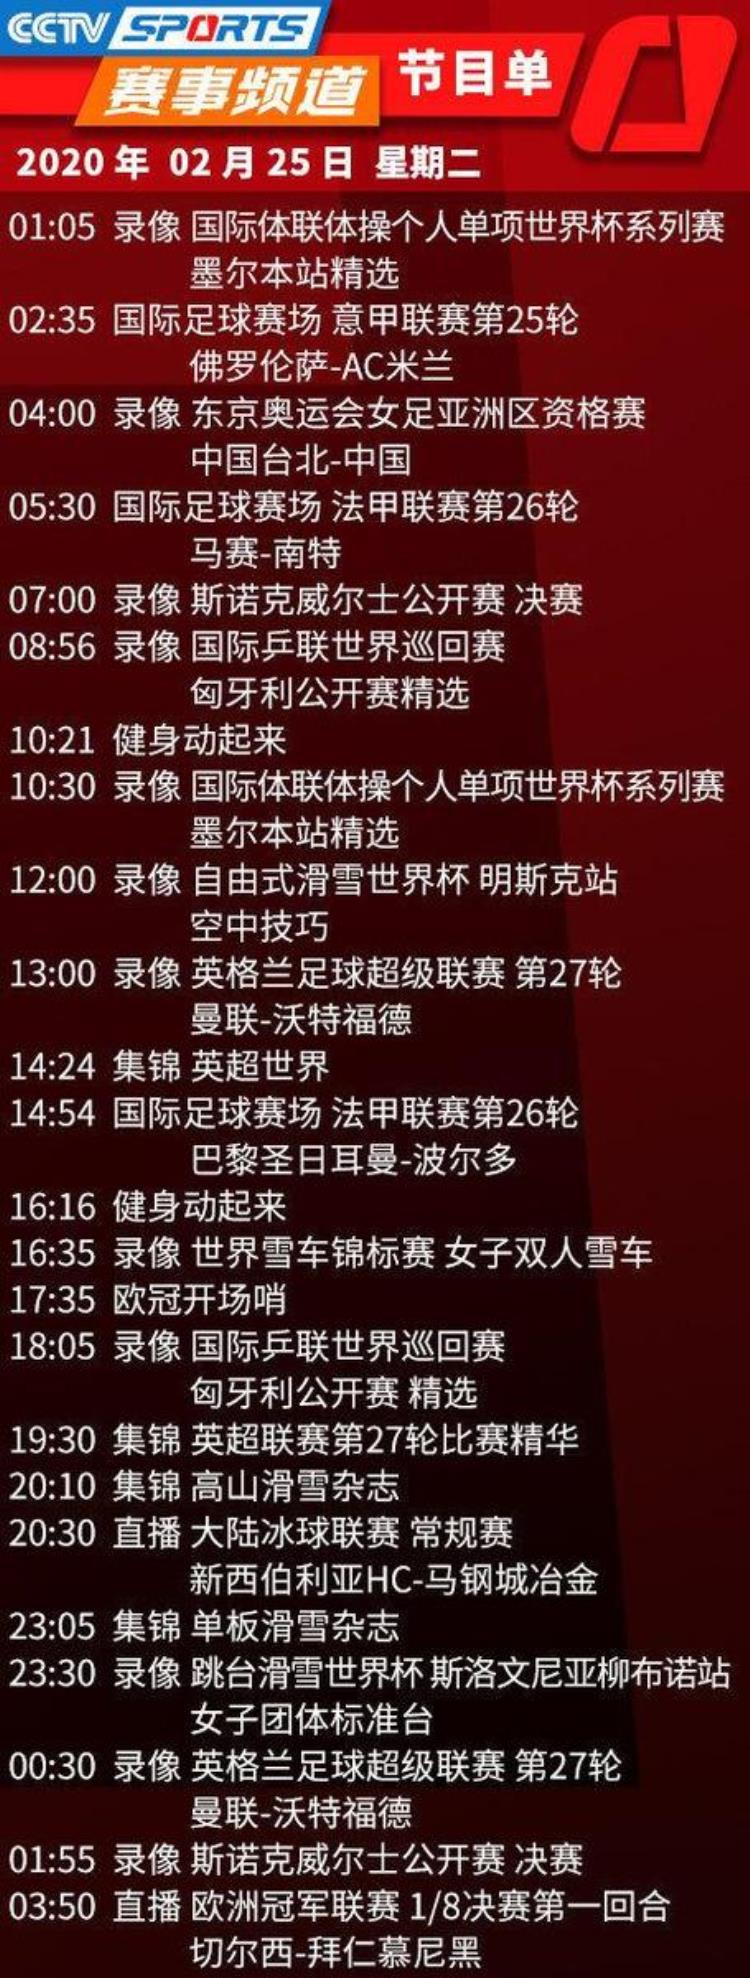 央视体育CCTV5/5今天节目单(2月25日)明天凌晨欧冠比赛